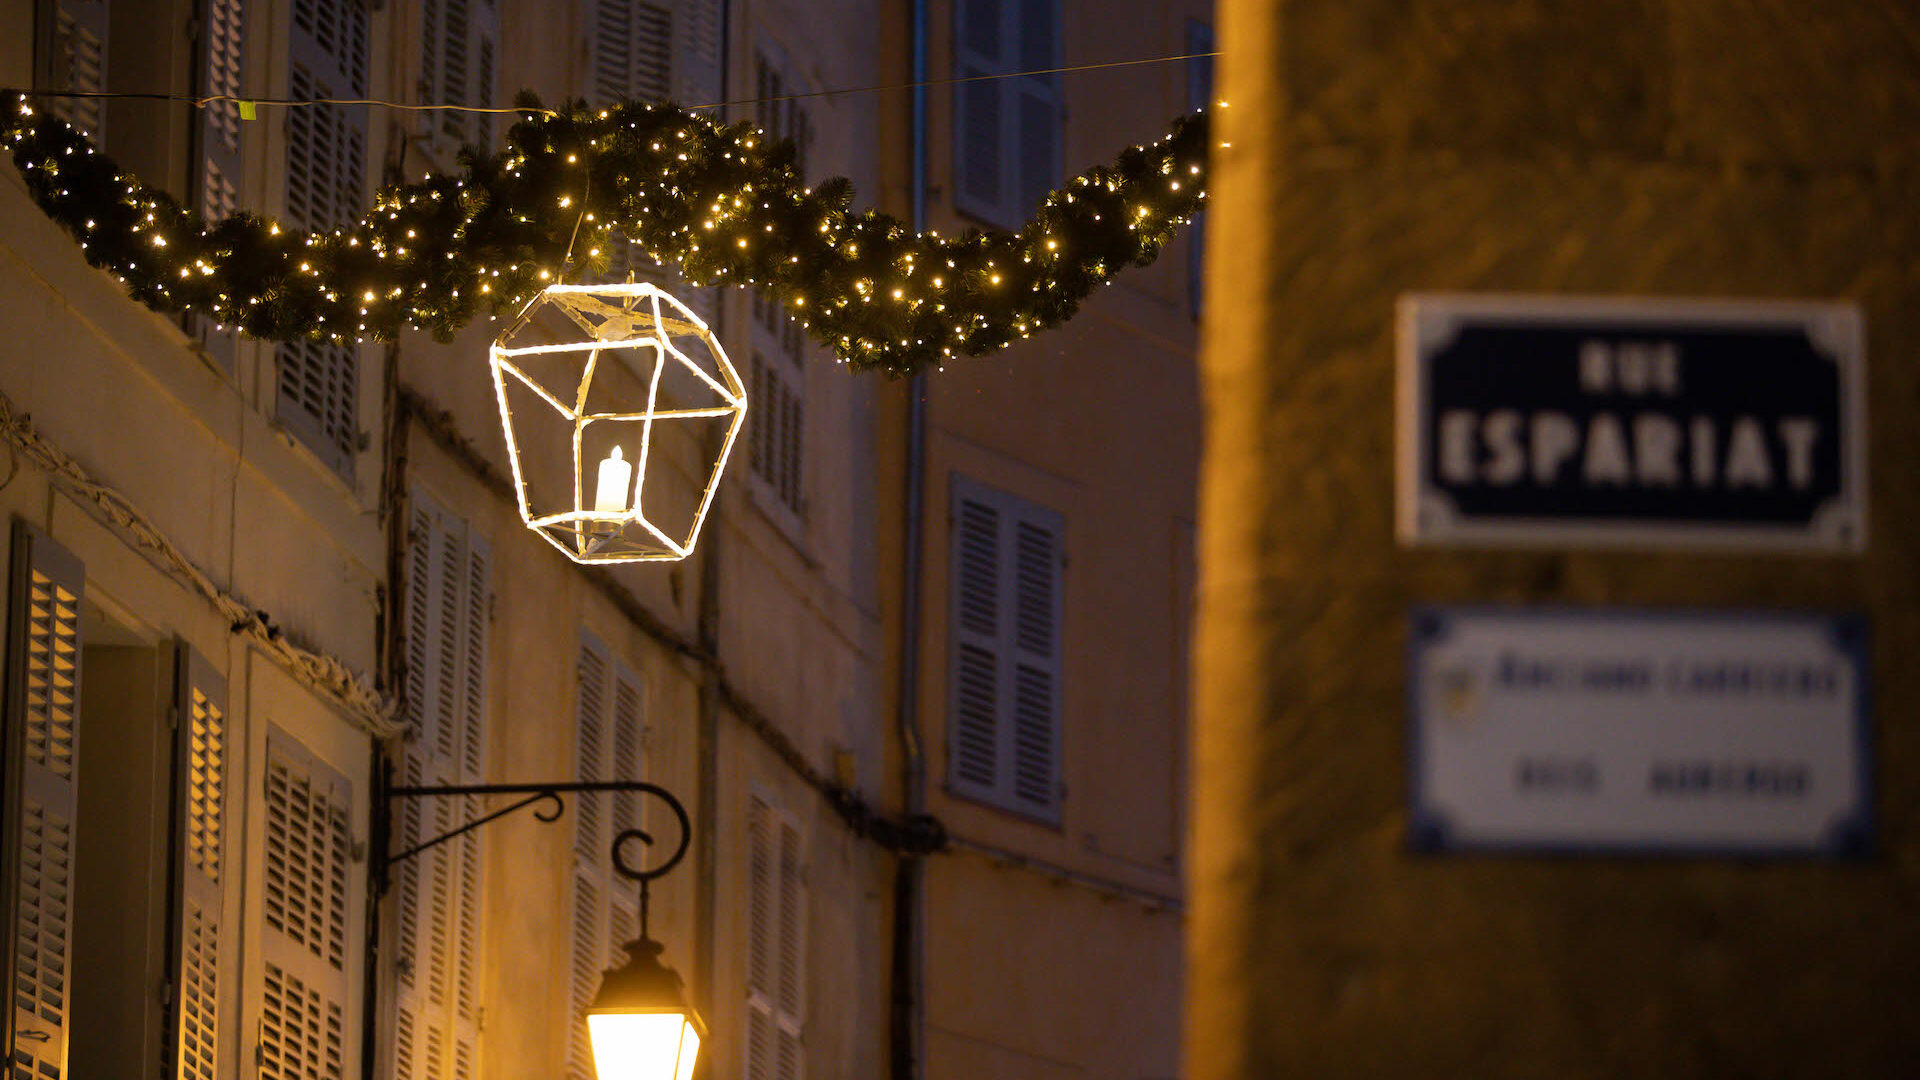 Ambiance de Noel dans les rues d'Aix-en-Provence